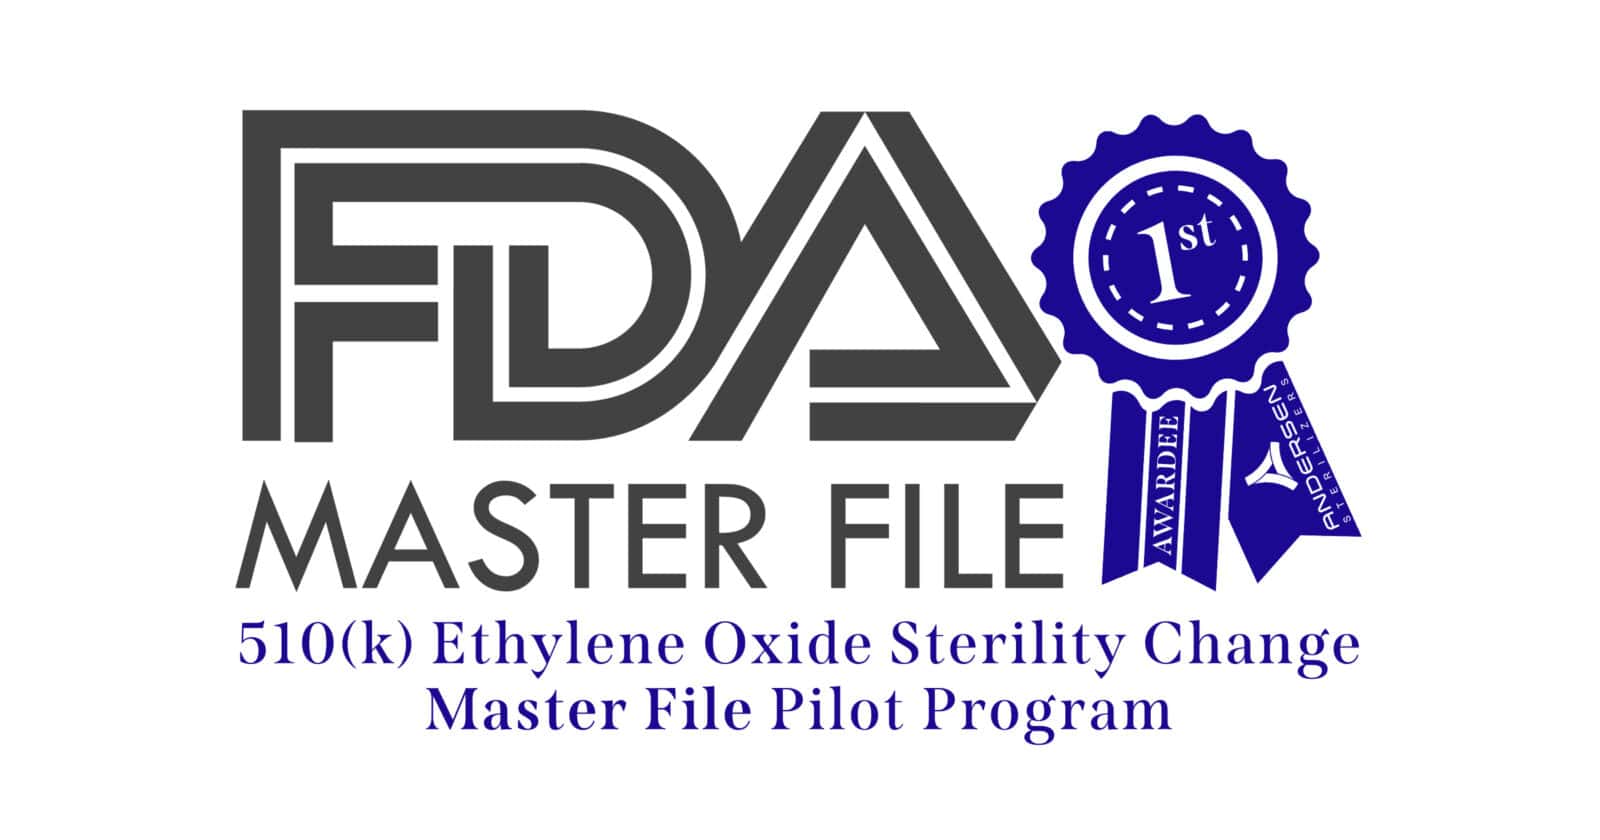 Andersen First Awardee of FDA 510(k) Ethylene Oxide Sterility Change Master File Pilot Program